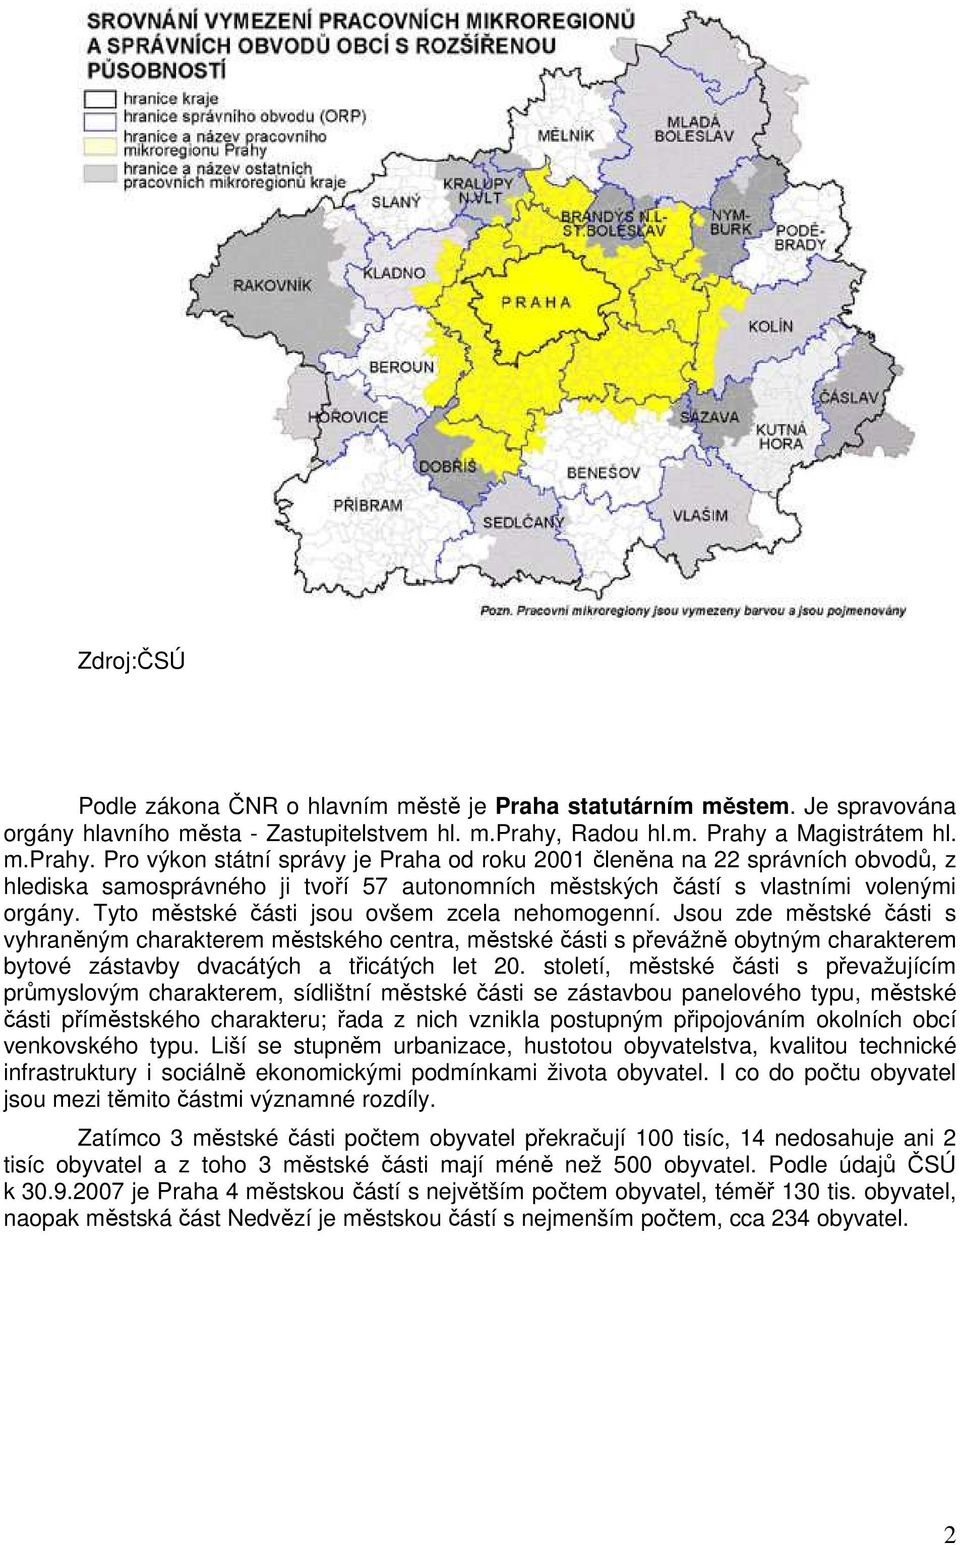 Pro výkon státní správy je Praha od roku 2001 členěna na 22 správních obvodů, z hlediska samosprávného ji tvoří 57 autonomních městských částí s vlastními volenými orgány.